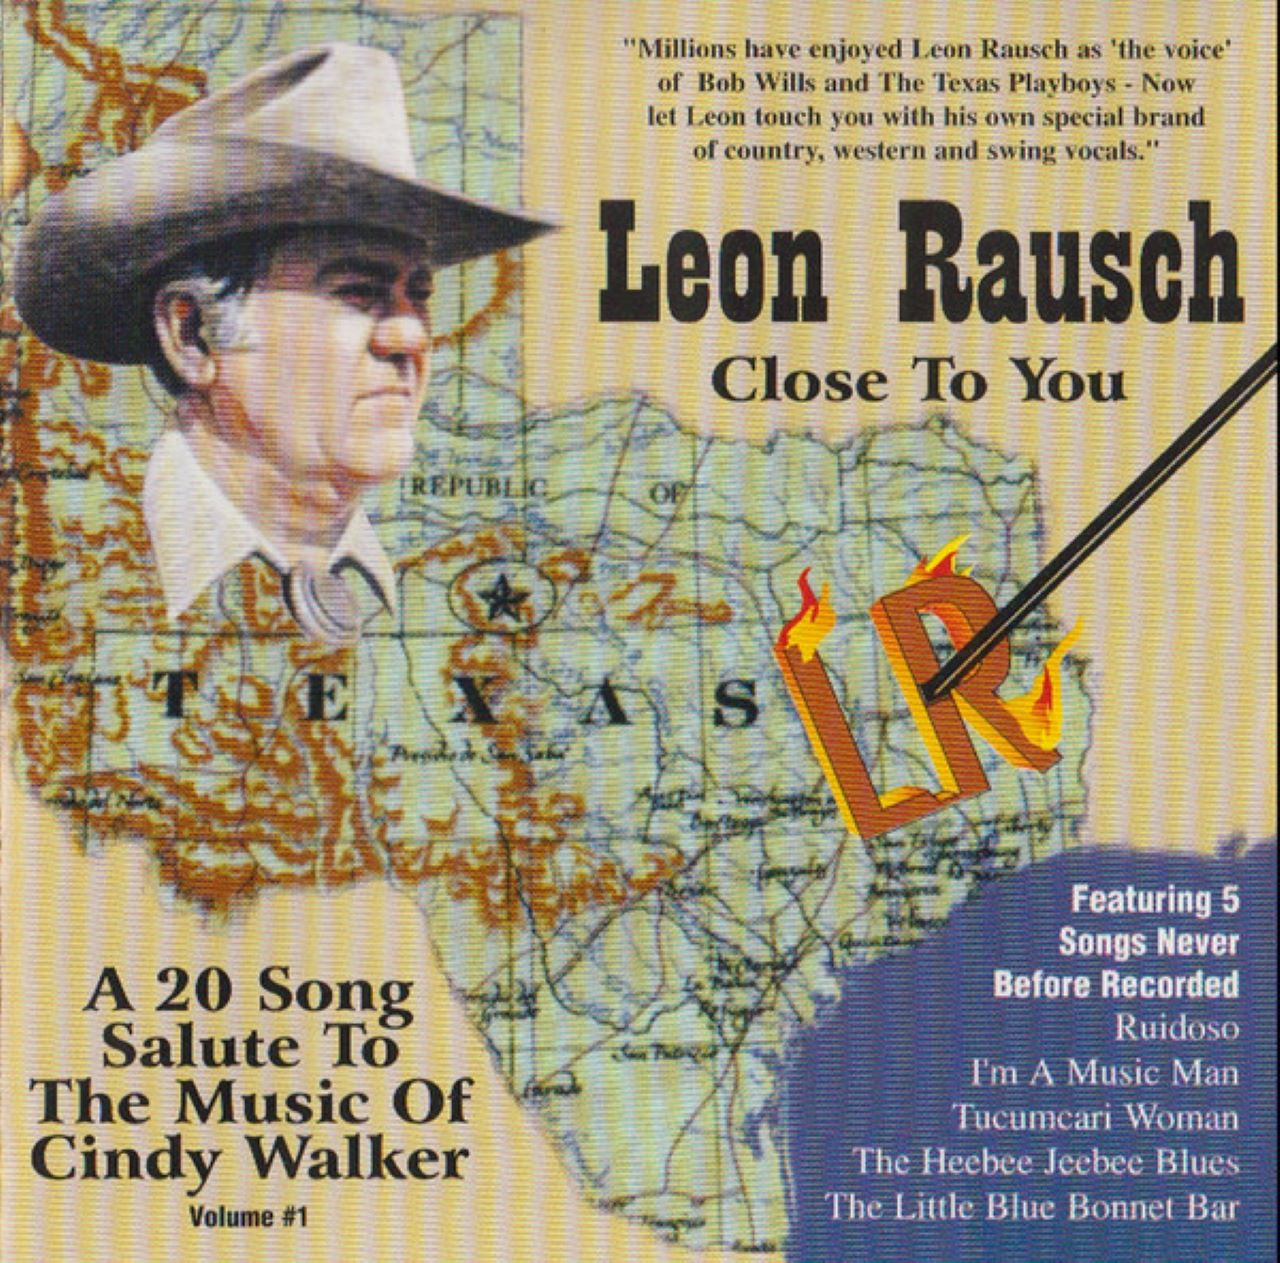 Leon Rausch - Close To You cover album